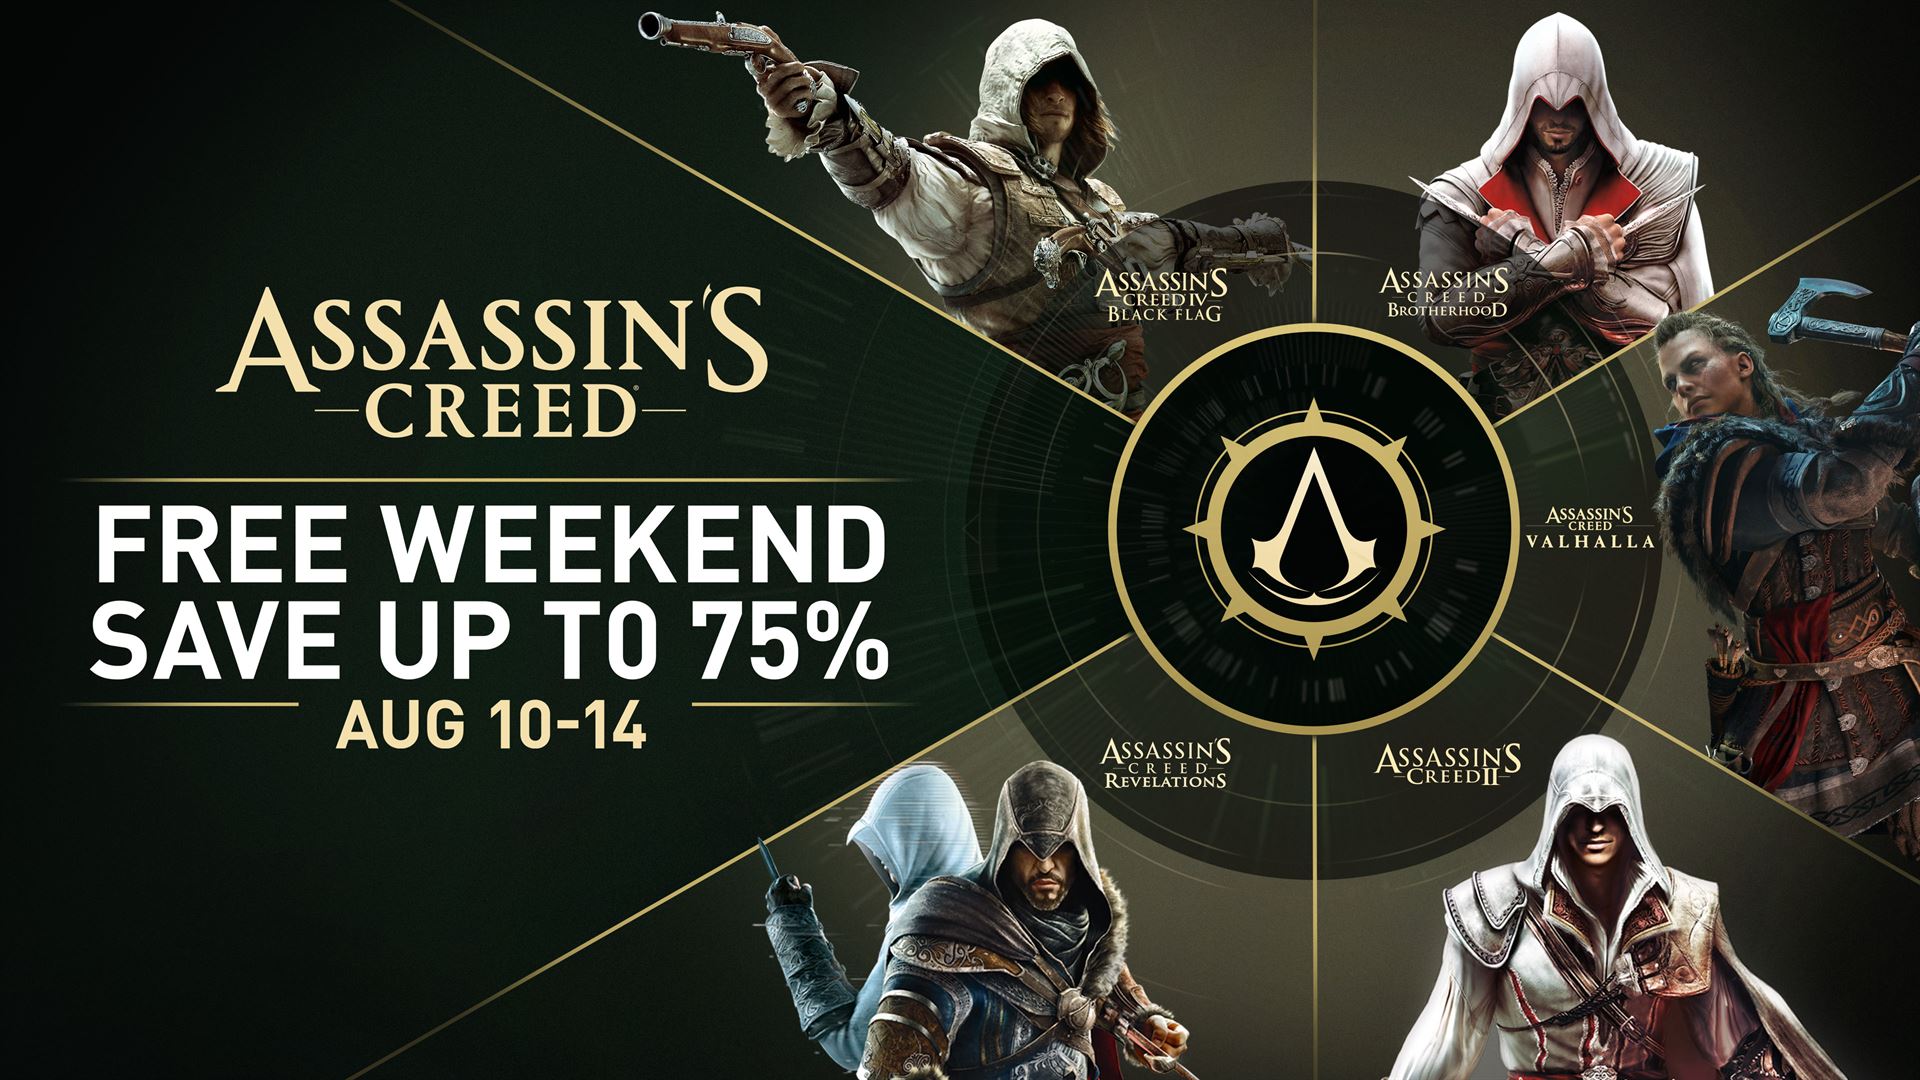 เล่นสุดยอดเกมฮิตจากแฟรนไชส์ Assassin’s Creed® เล่นฟรีสุดสัปดาห์นี้!